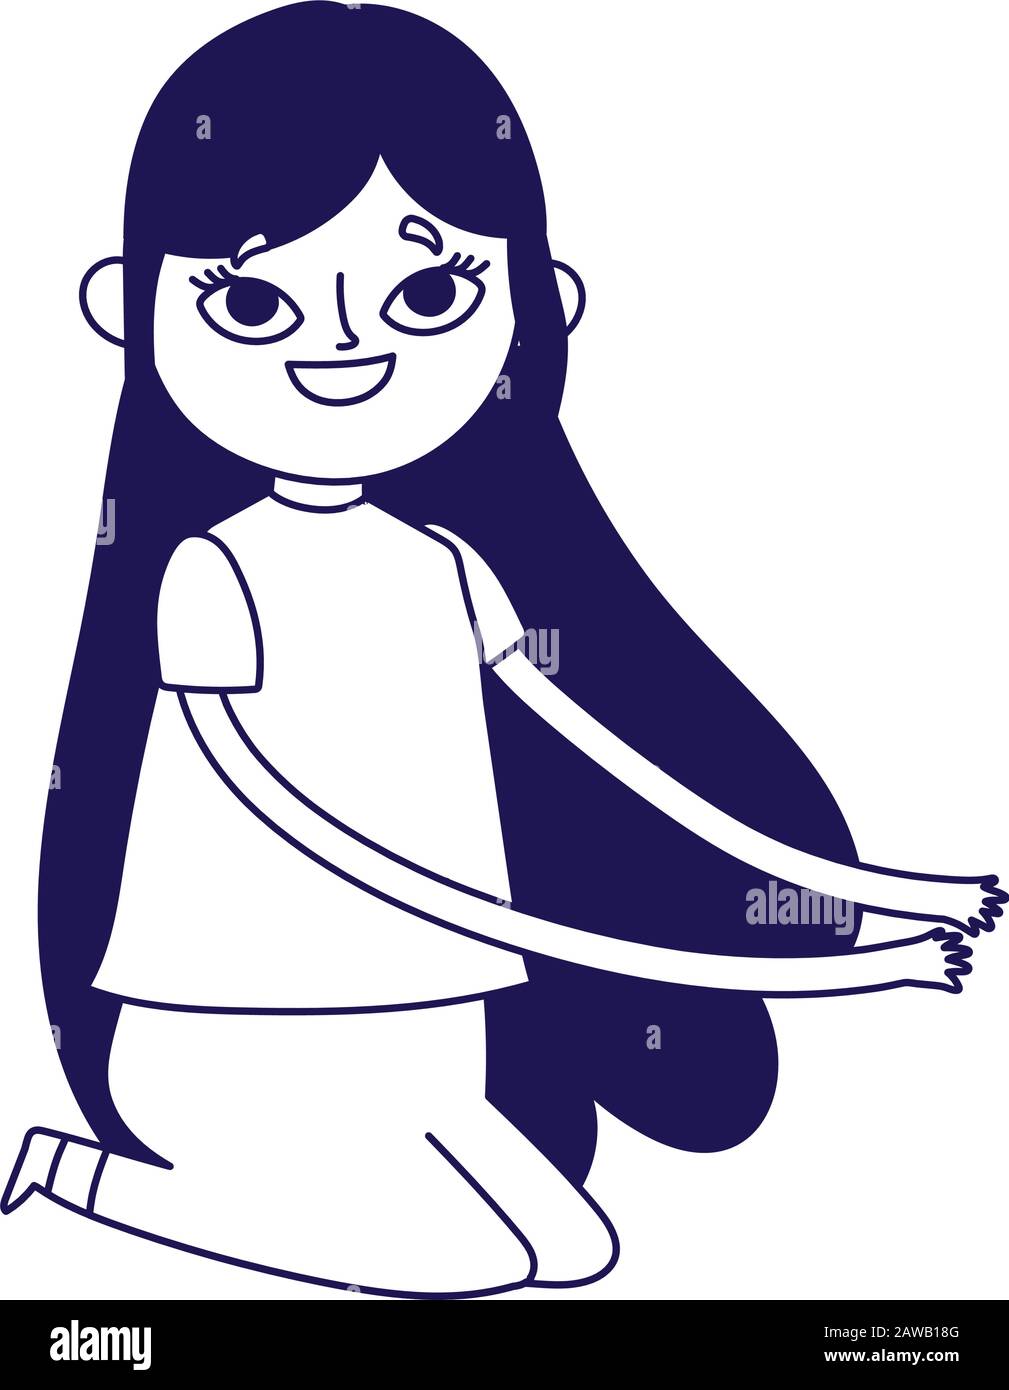 personaje de dibujos animados de mujer joven arrodillada sobre ilustración  de vector de fondo blanco Imagen Vector de stock - Alamy